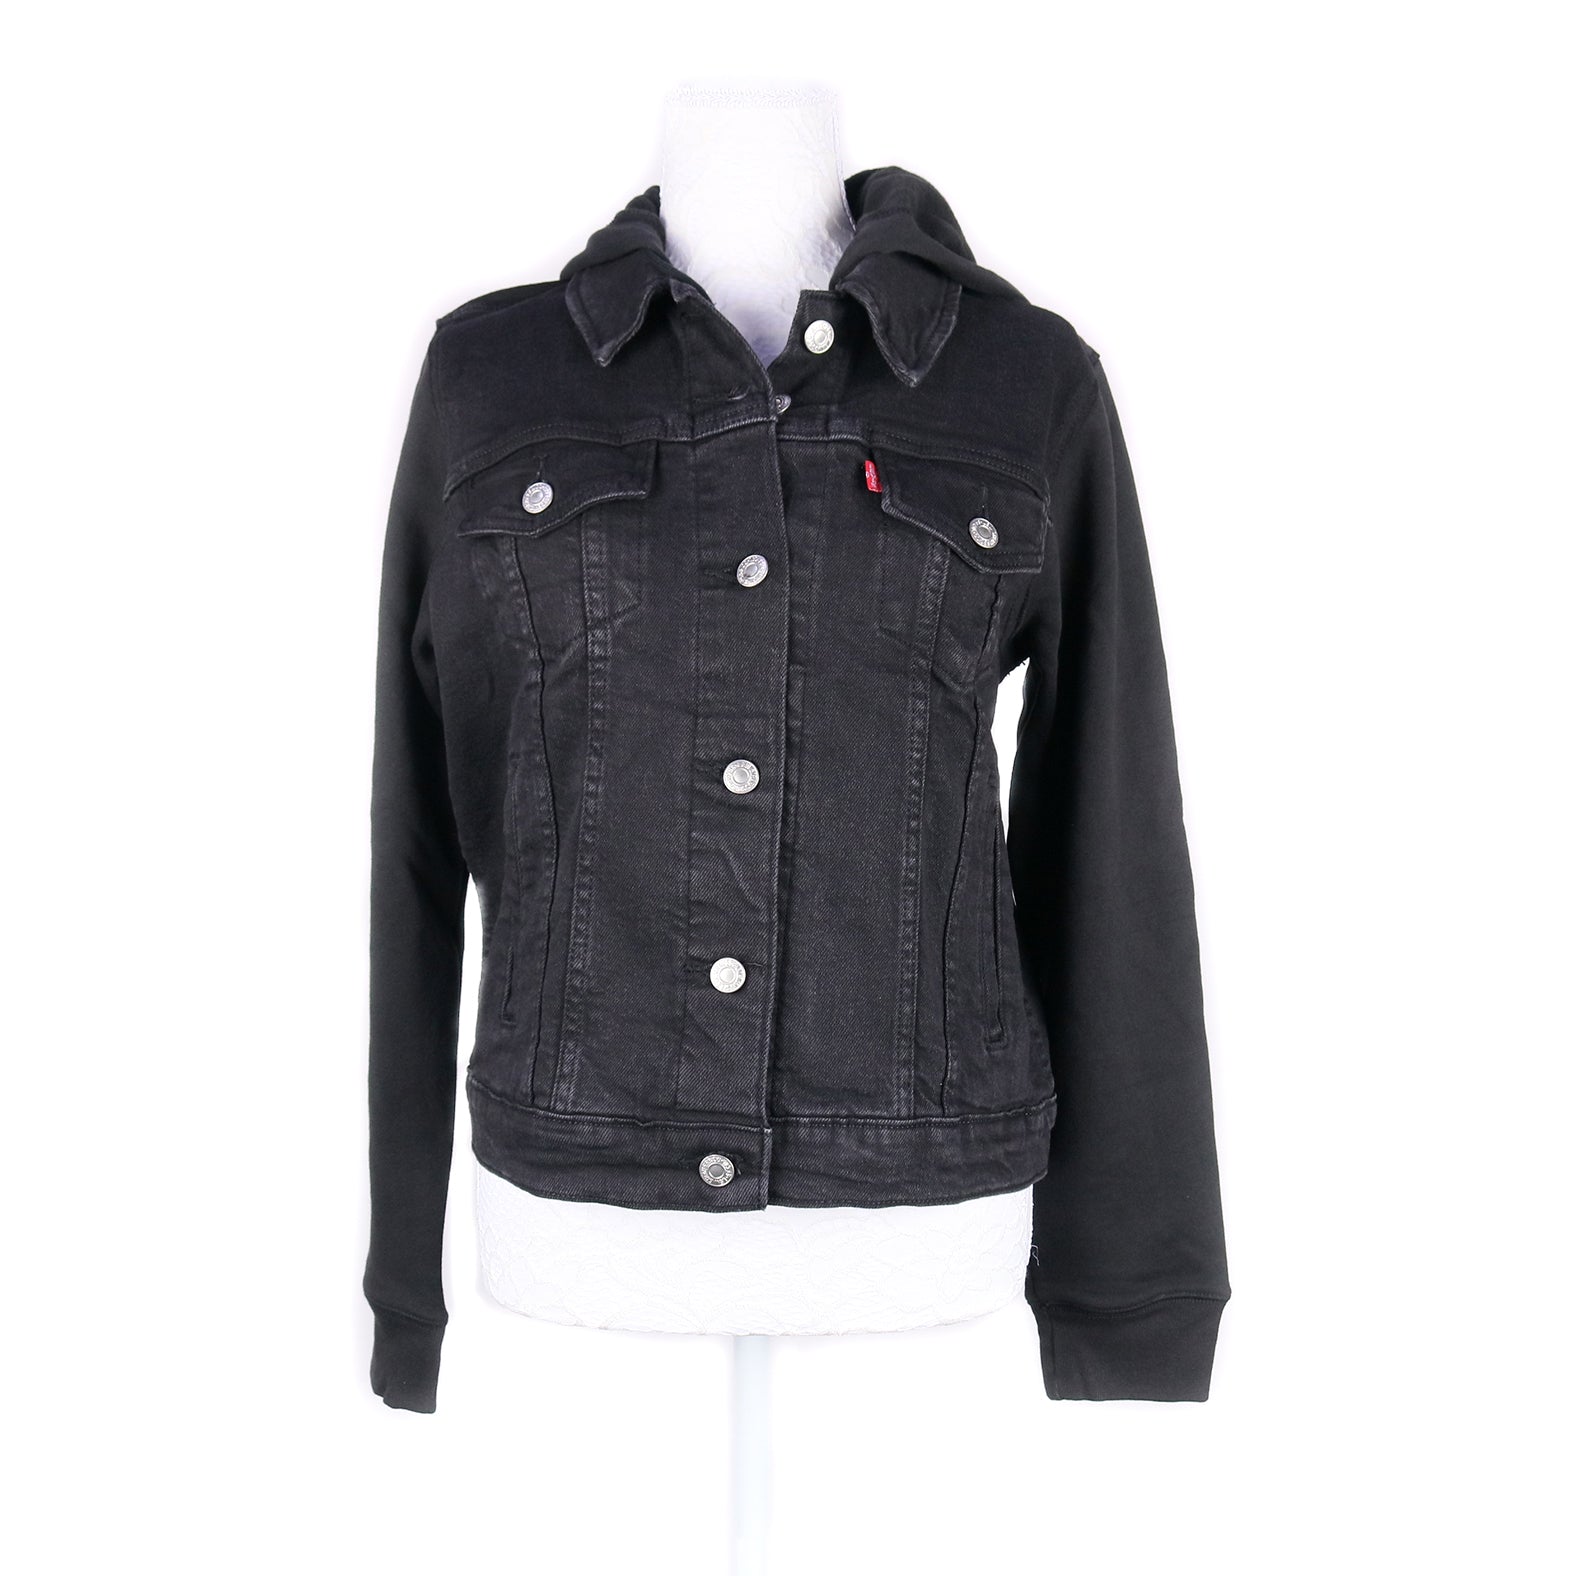 MK22512 - Embroidered Denim Jacket Black - Hooded